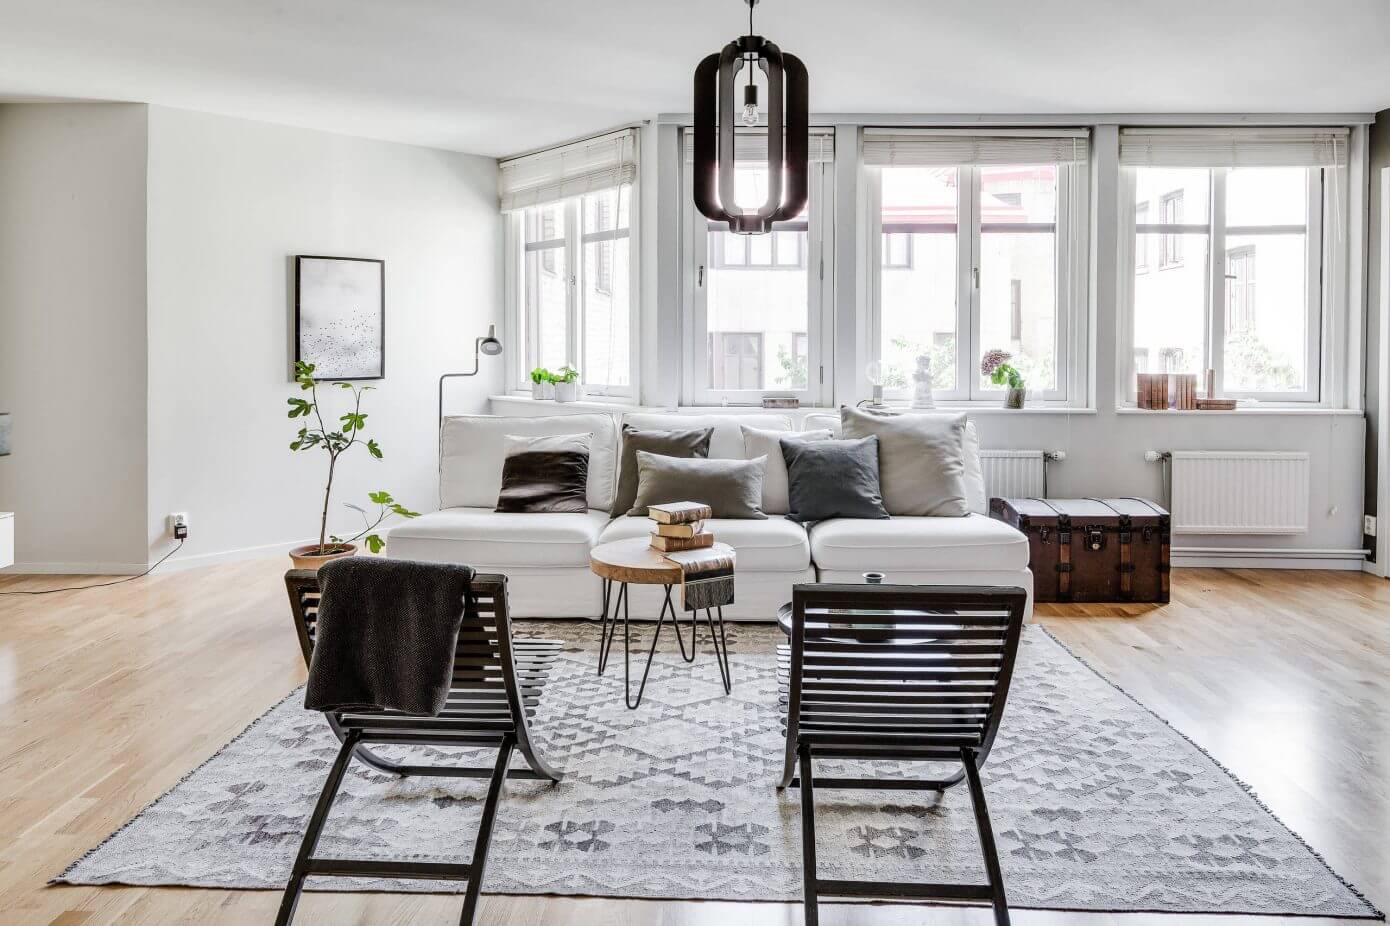 Apartment in Gothenburg by REVENY